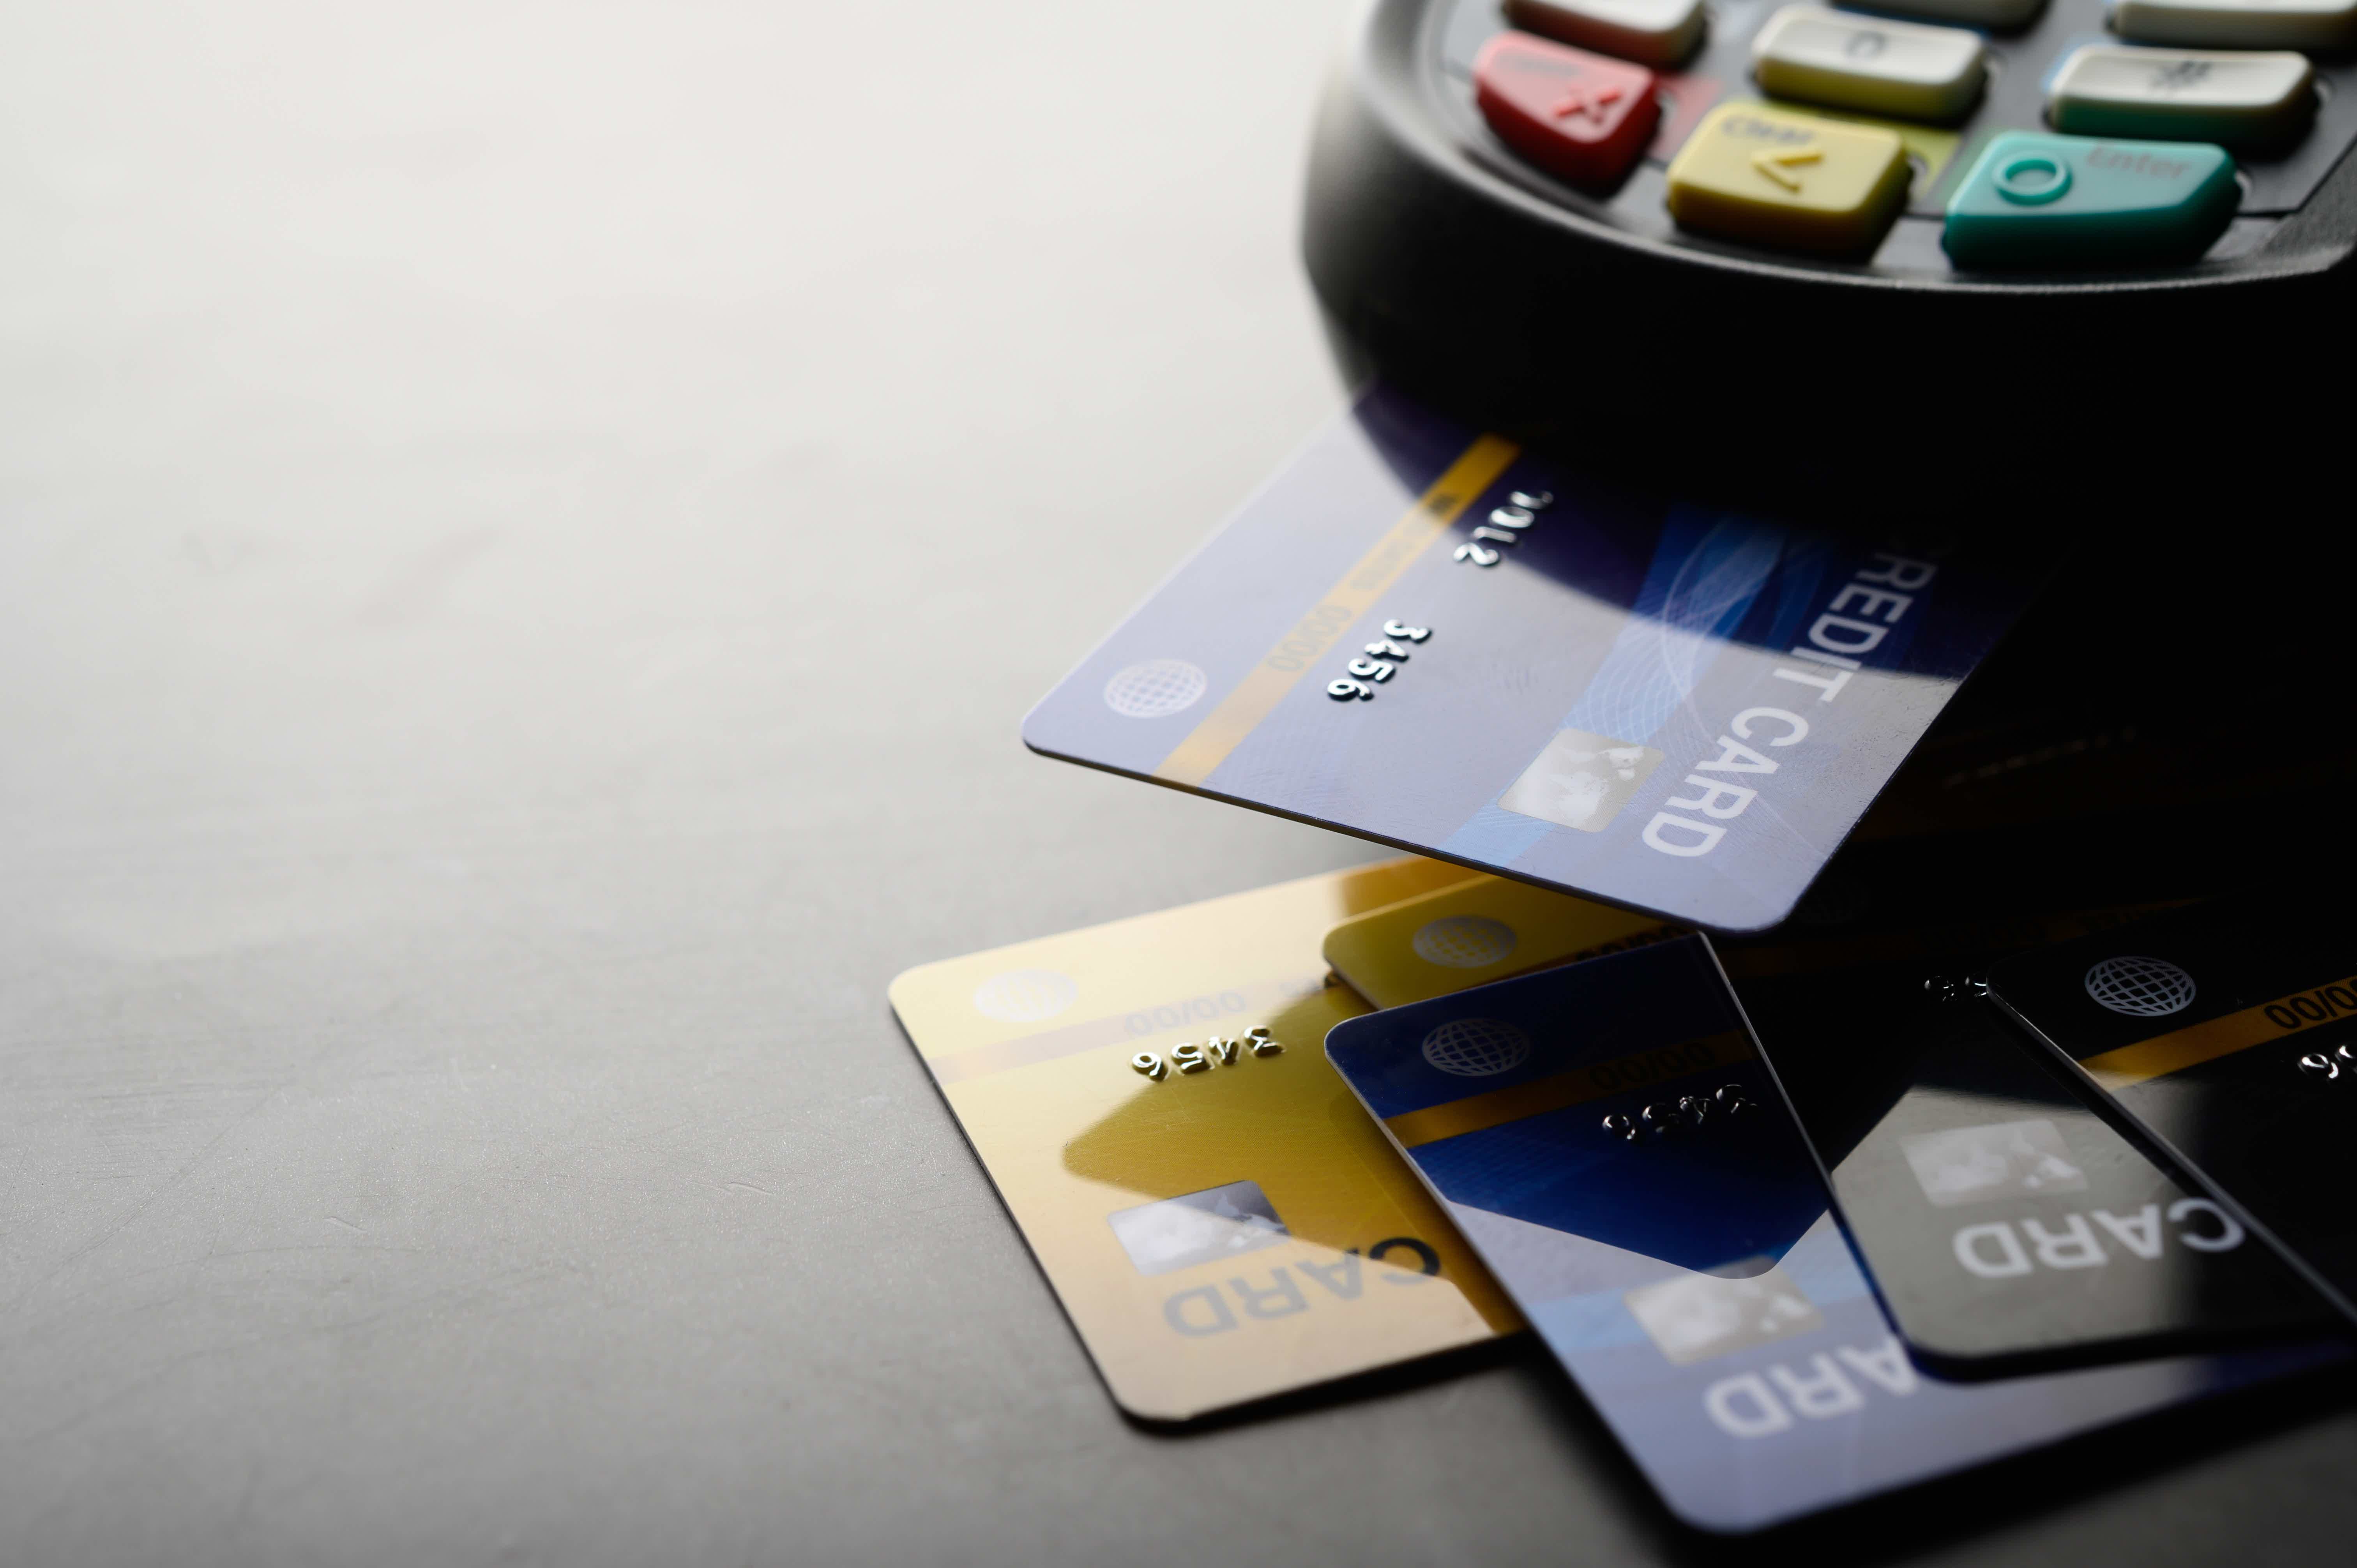 Afinal, existem muitos cartões de crédito disponíveis no mercado. Contudo, é preciso saber identificar os melhores. Fonte: Freepik.